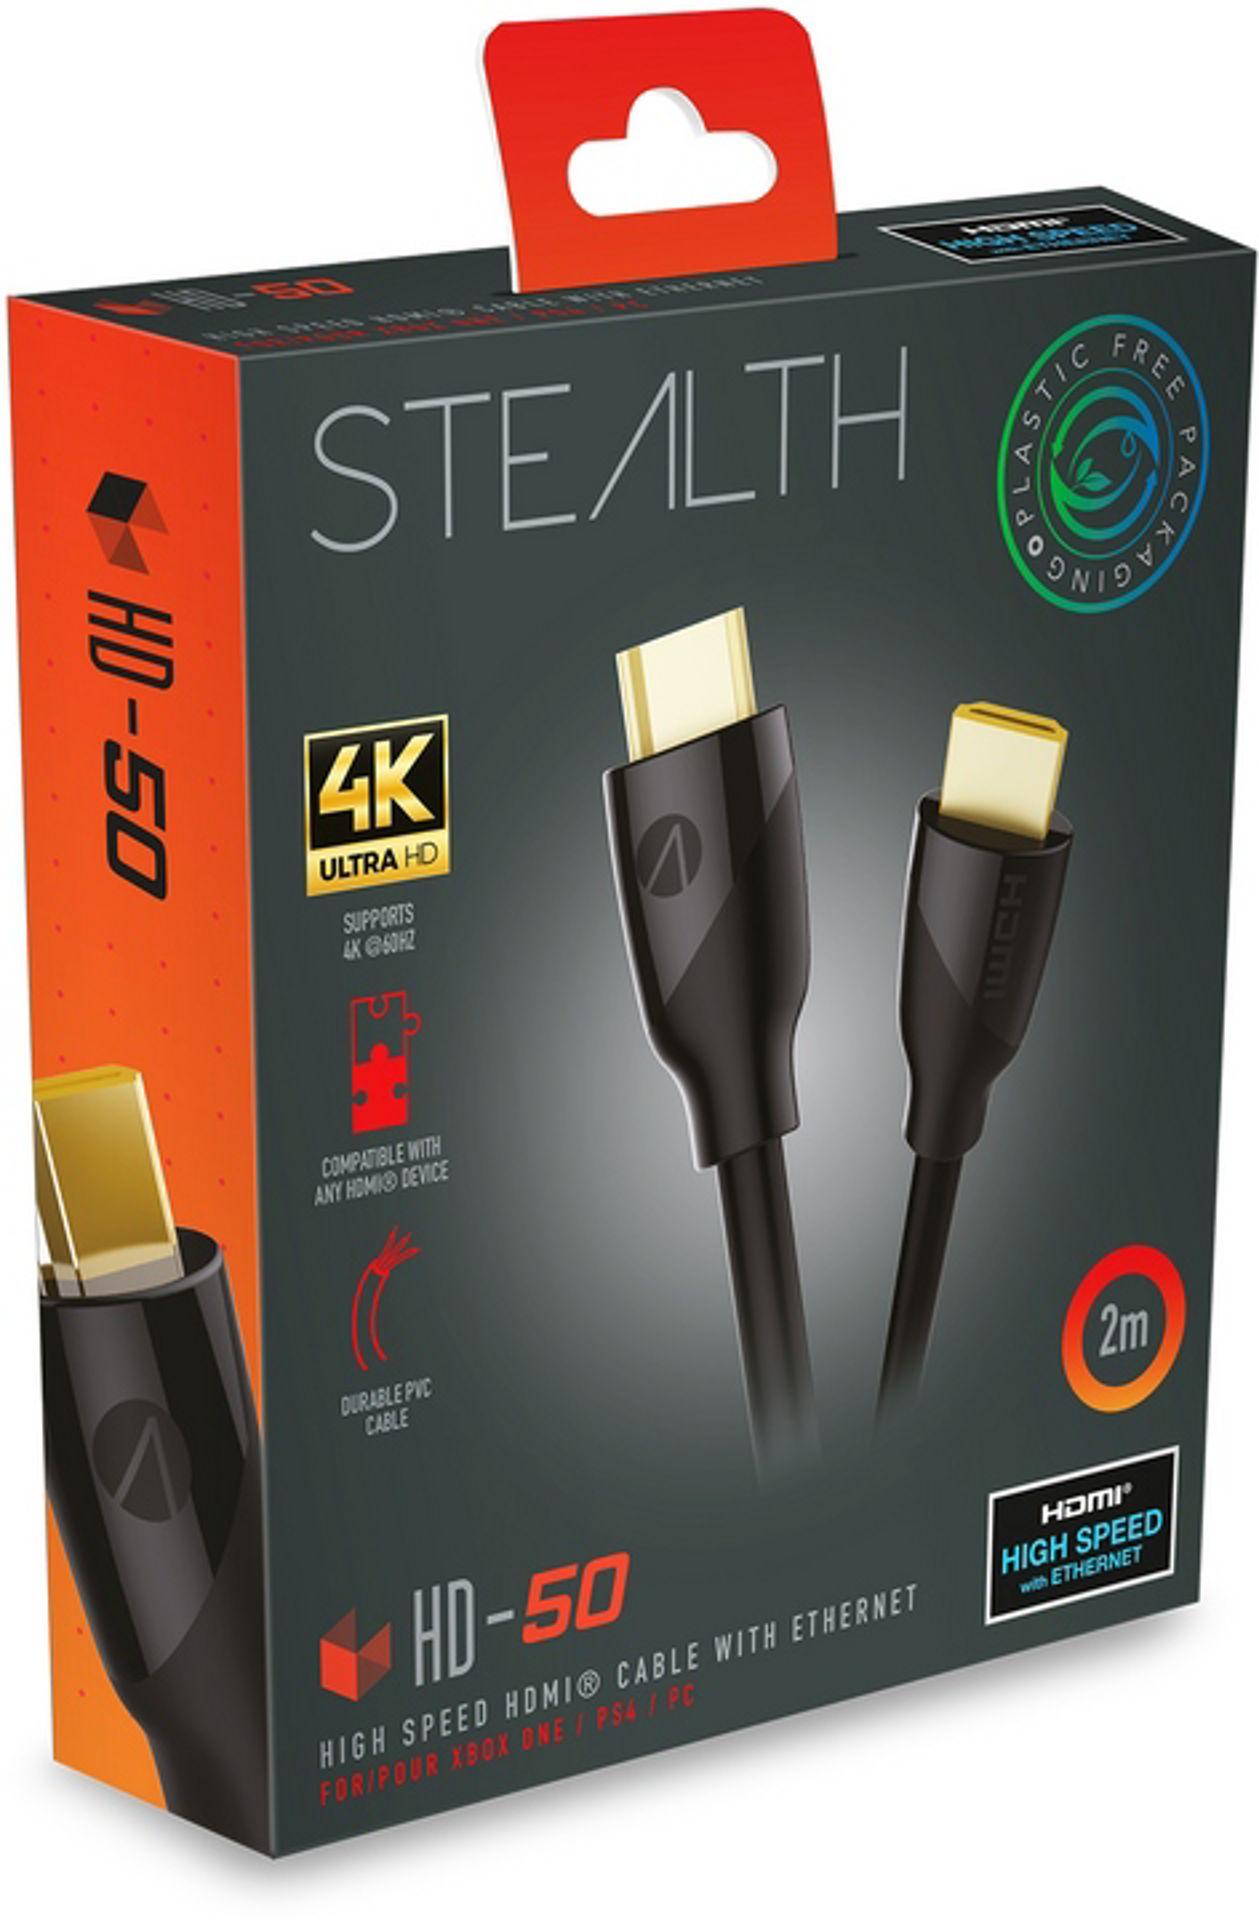 Acheter Stealth - Câble HDMI 4K Ultra HD Haute Vitesse avec Ethernet HD- -  Cables prix promo neuf et occasion pas cher